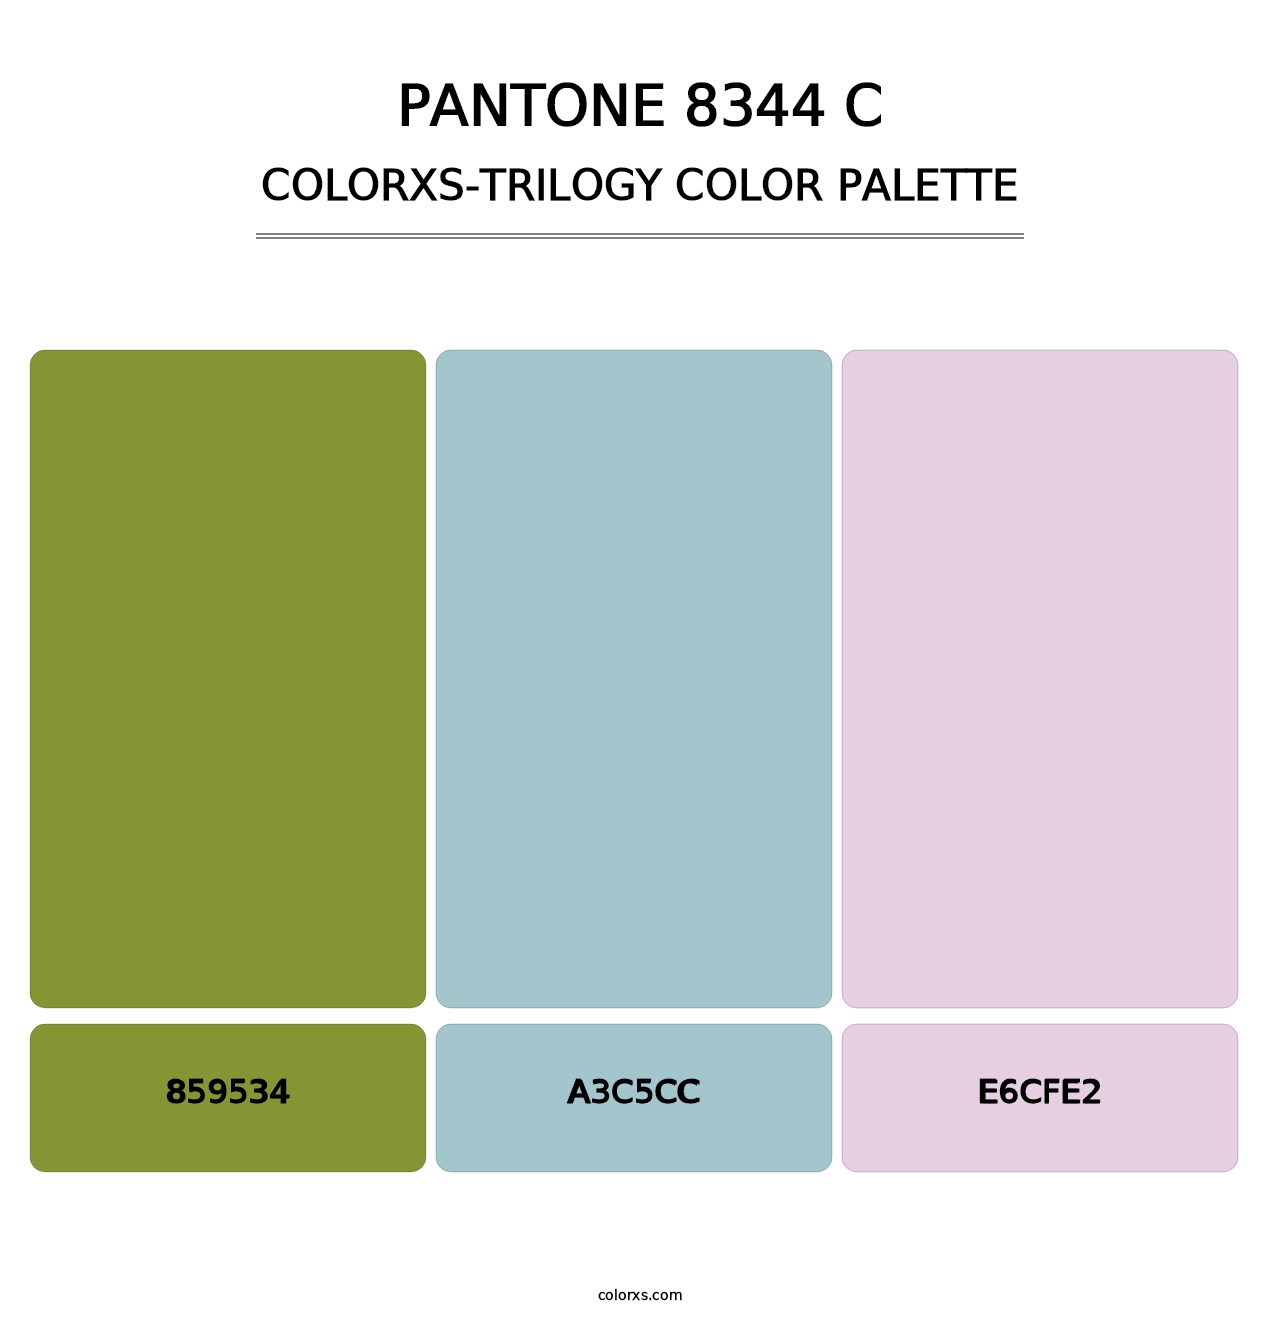 PANTONE 8344 C - Colorxs Trilogy Palette